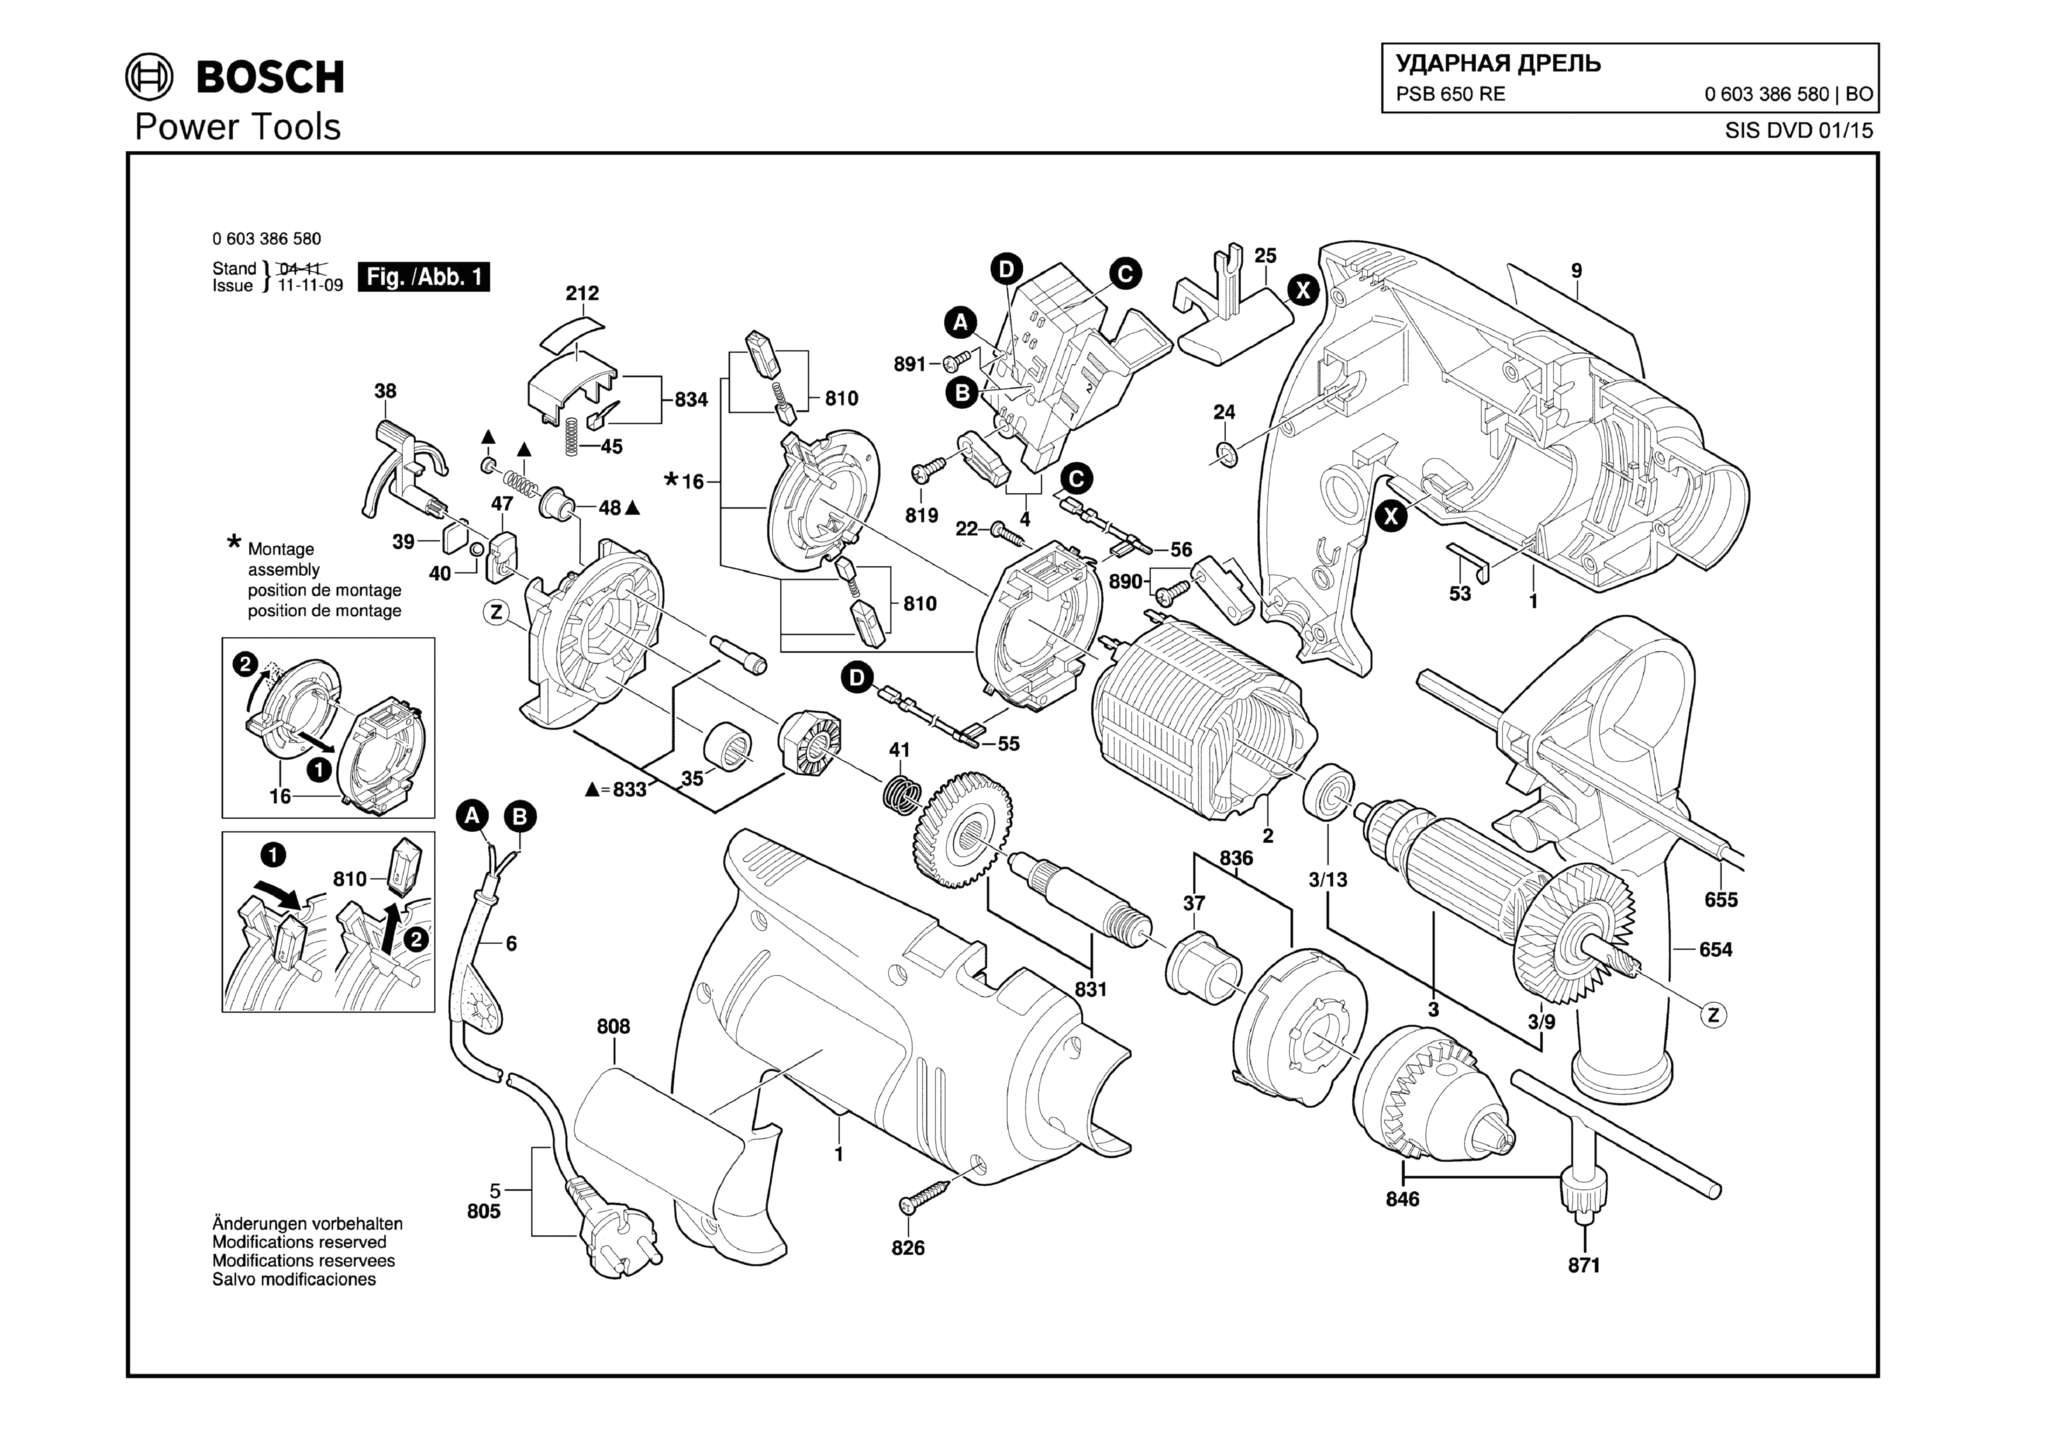 Запчасти, схема и деталировка Bosch PSB 650 RE (ТИП 0603386580)